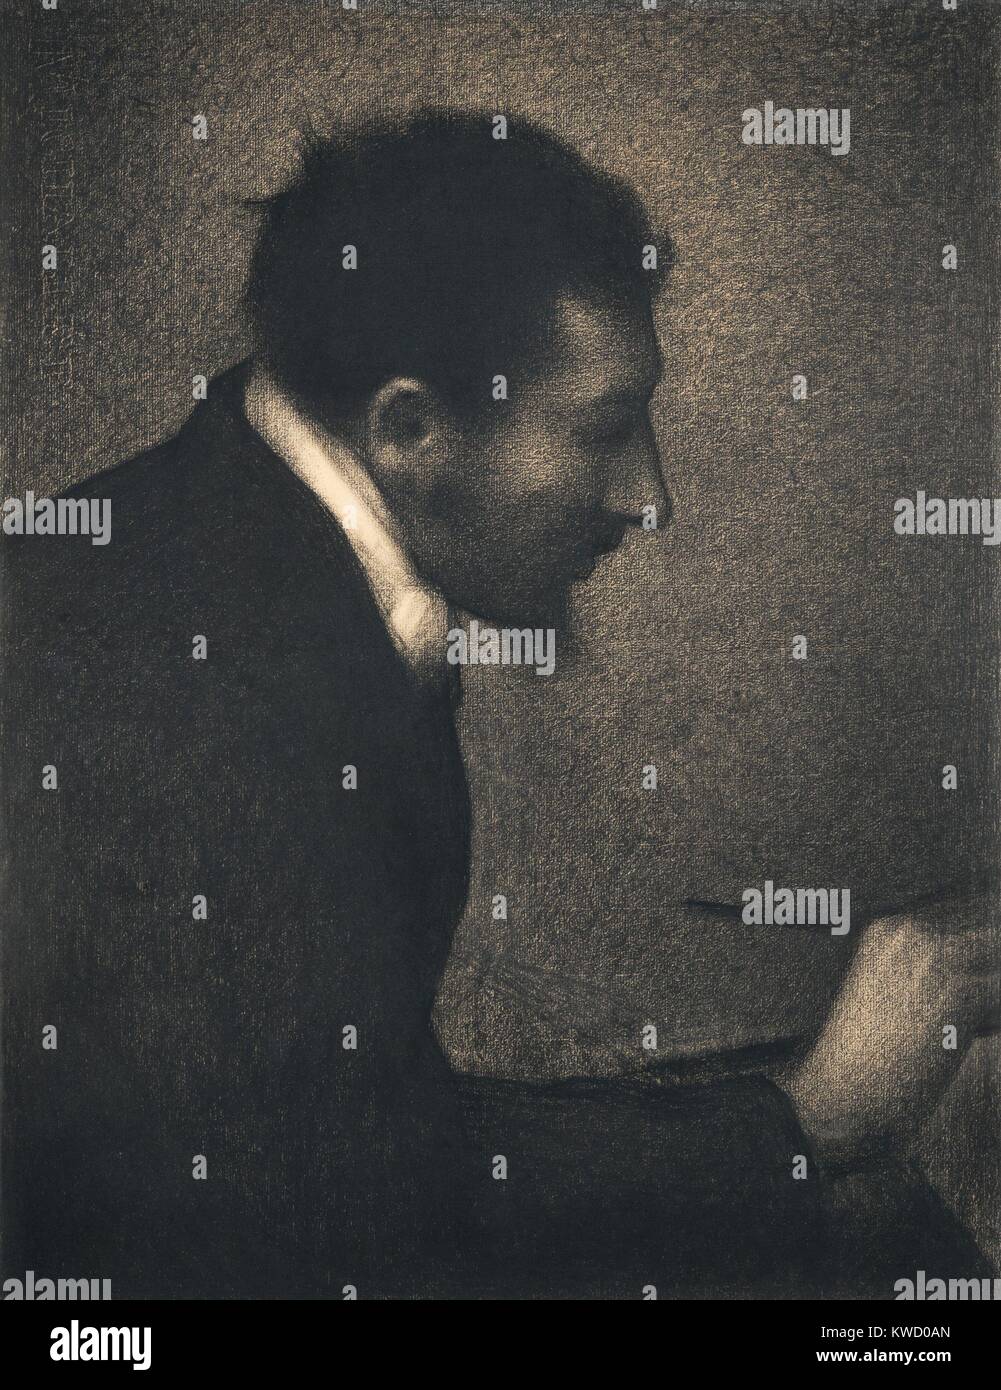 Aman-Jean, par Georges Seurat, 1882-1883, le français postimpressionnistes, dessin au crayon Conté sur papier. Seurats portrait de son ami, l'artiste Aman-Jean, a été démontré dans le Salon de Paris de 1883, et a été le premier ouvrage à être exposée par l'artiste, à l'âge de 23 (BSLOC 2017 5 85) Banque D'Images